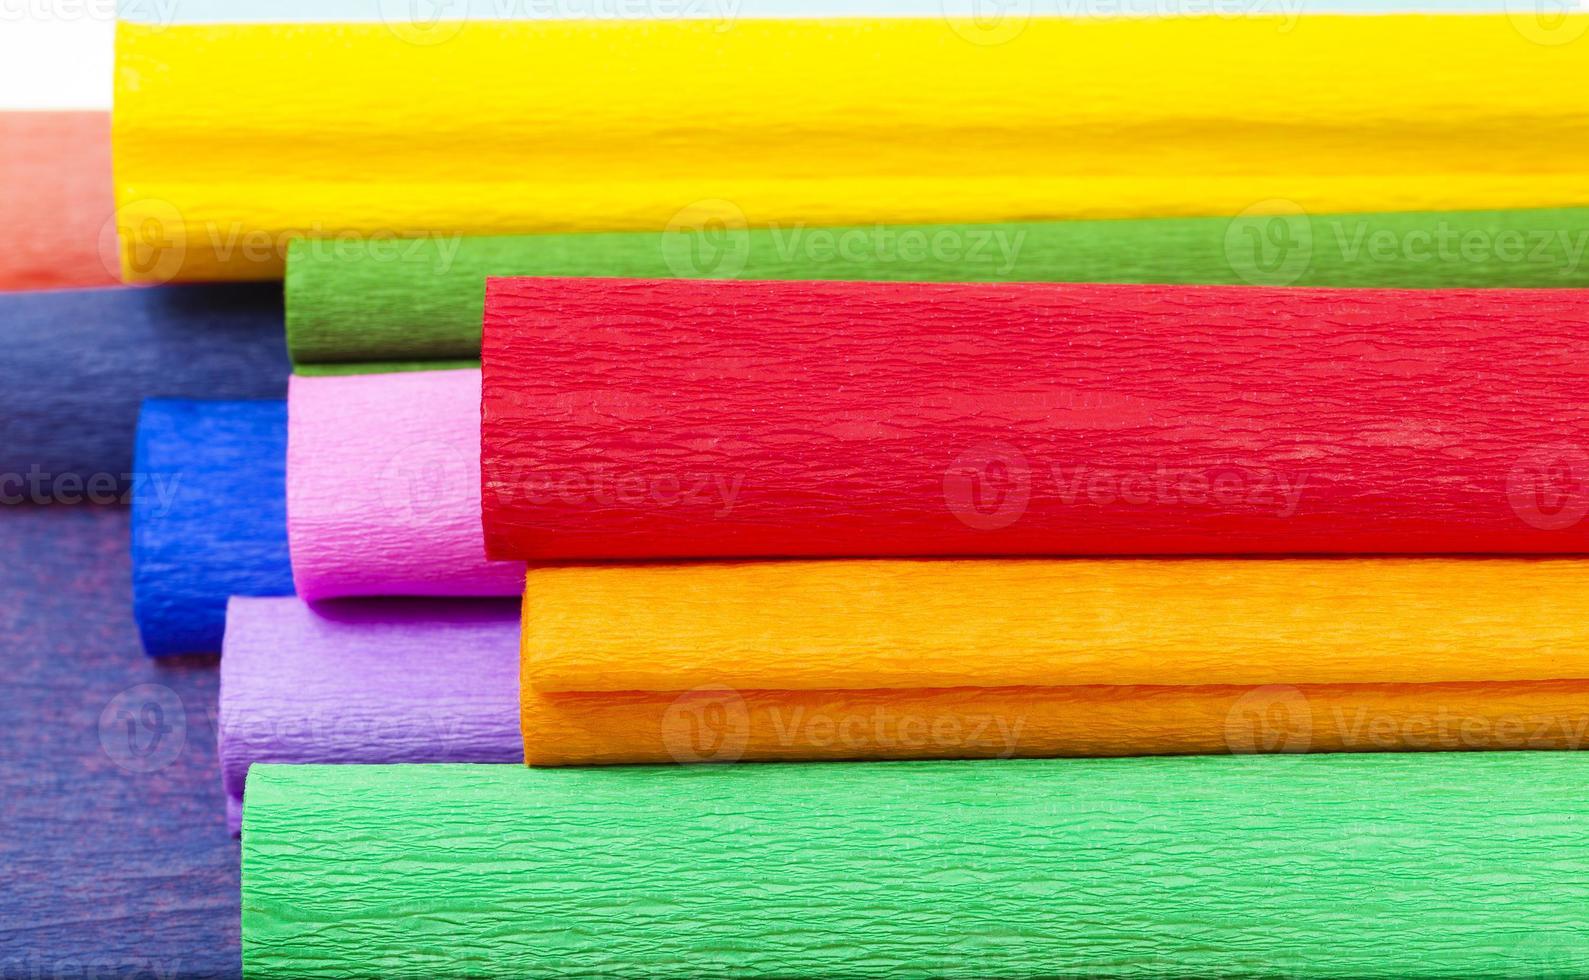 kräpppapper - det flerfärgade kräpppappret satt ihop foto